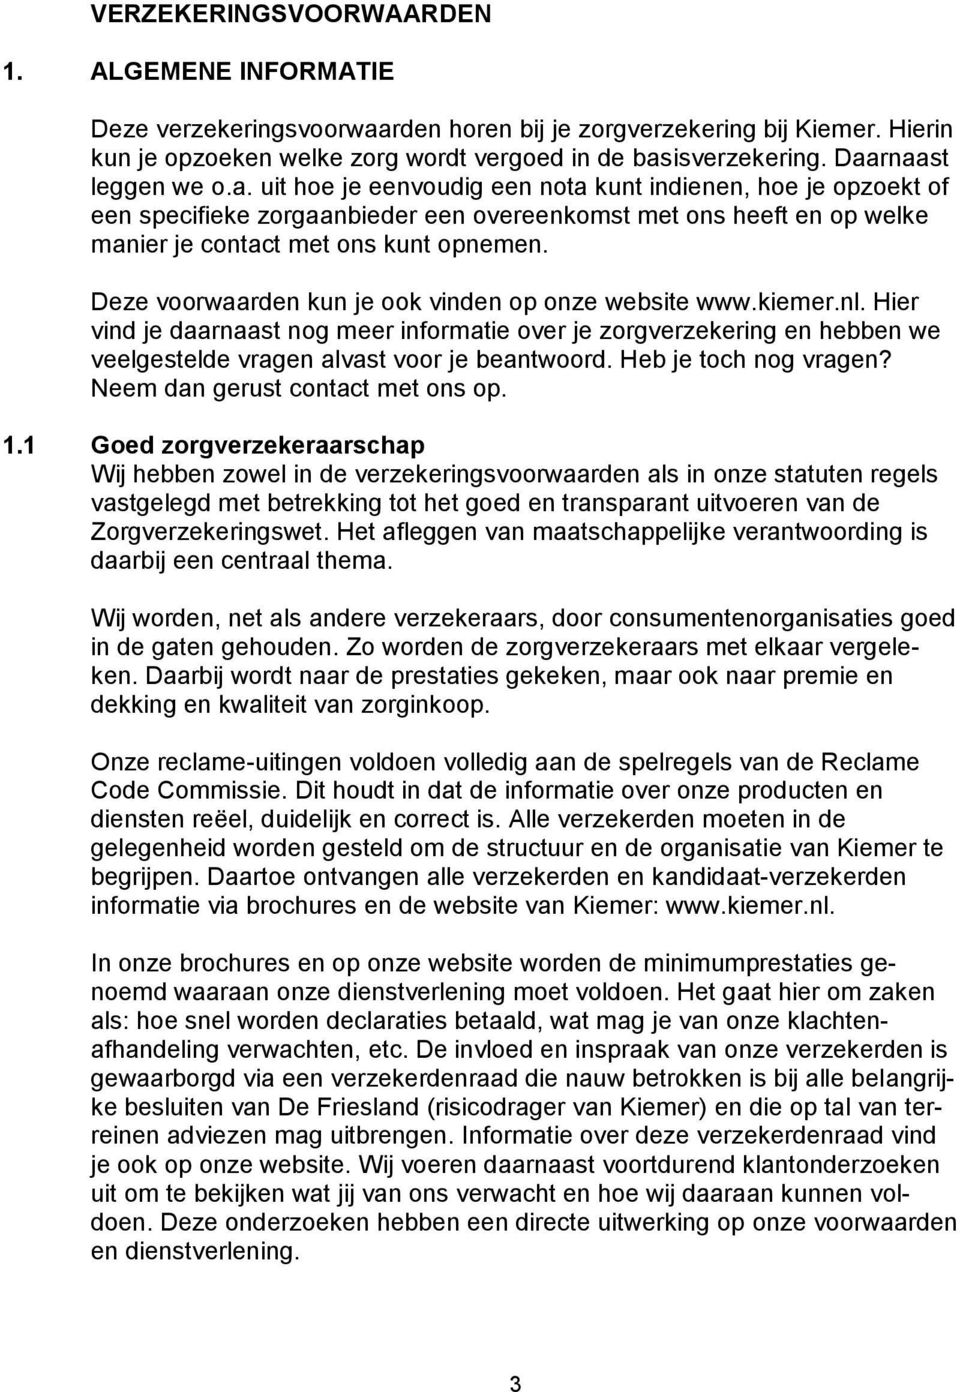 Deze voorwaarden kun je ook vinden op onze website www.kiemer.nl. Hier vind je daarnaast nog meer informatie over je zorgverzekering en hebben we veelgestelde vragen alvast voor je beantwoord.